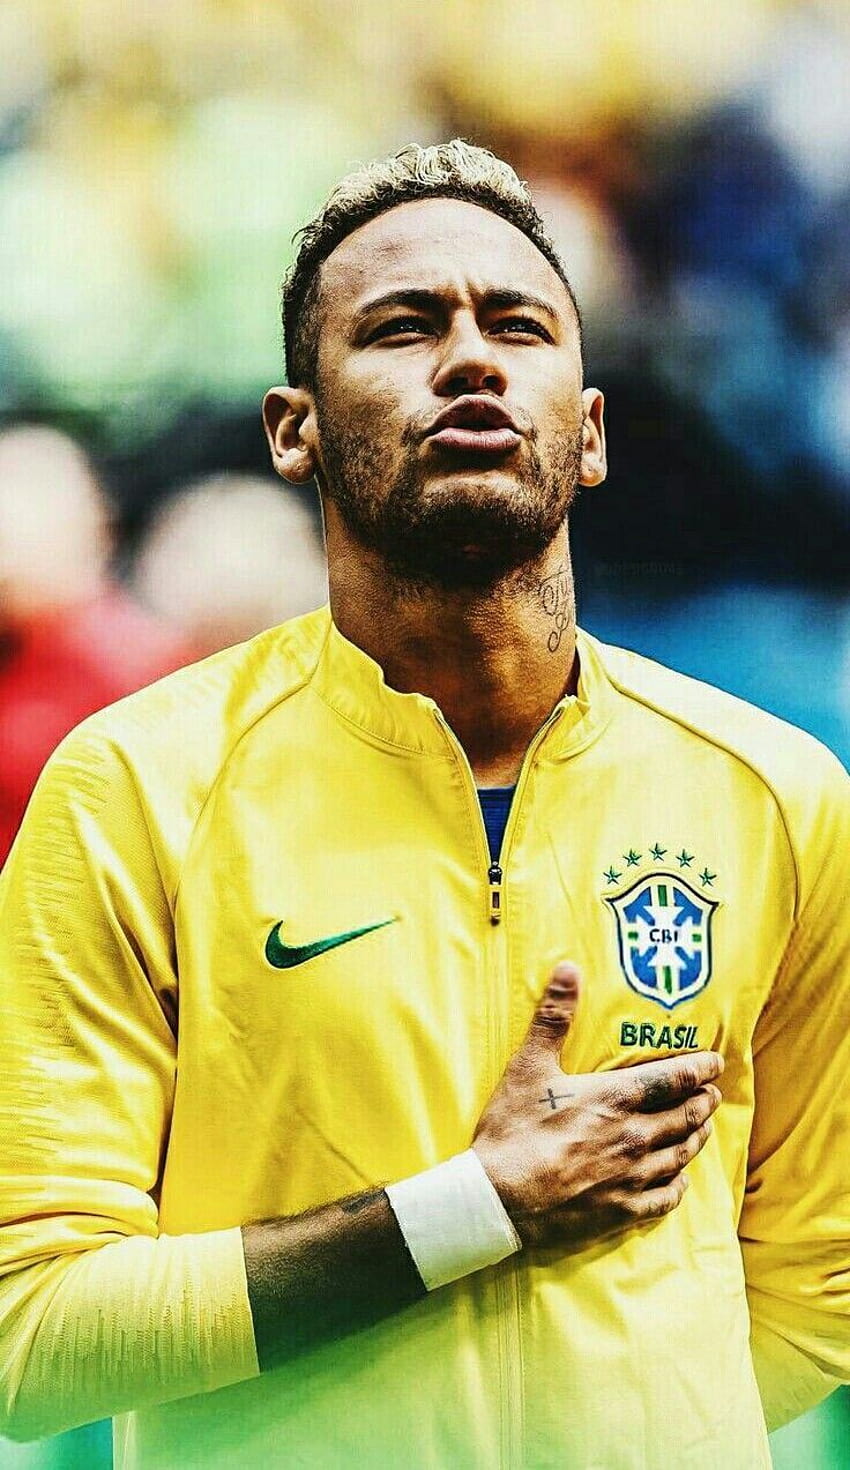 1366x768px, 720P Free download | Neymar World Cup, neymar brazil 2022 ...